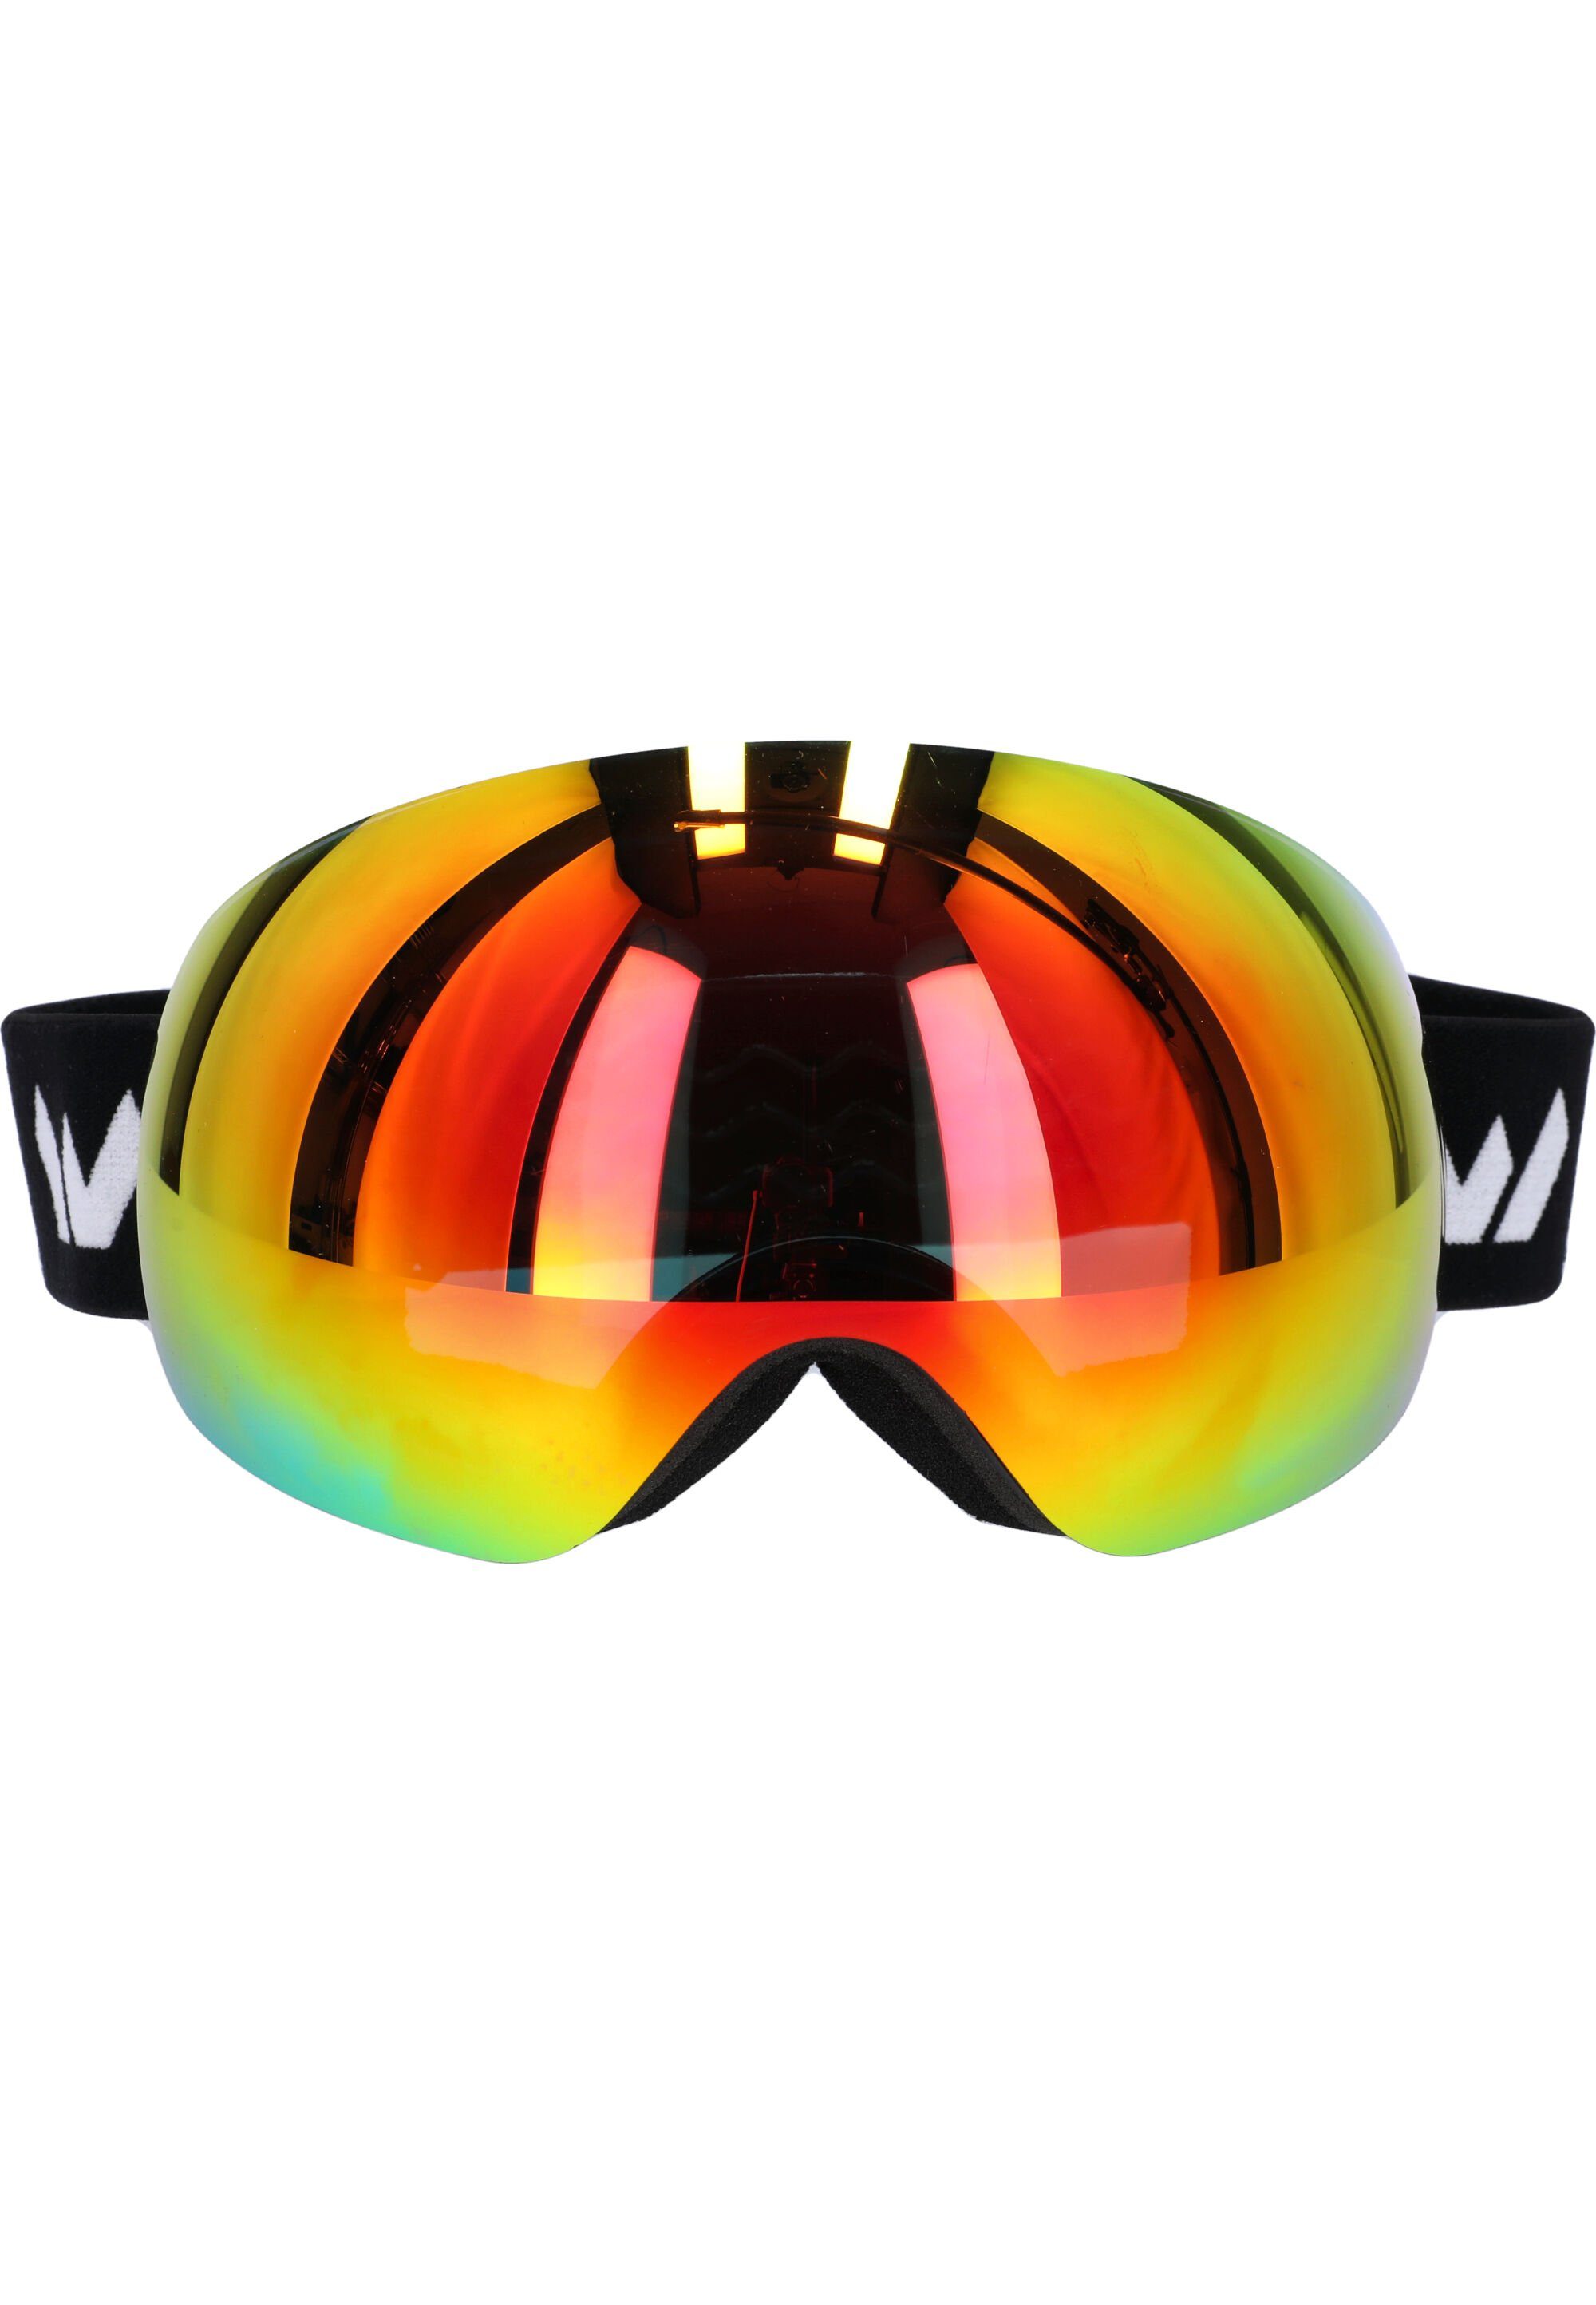 Skibrille WS6100, Anti-Fog-Beschichtung schwarz-gelb WHISTLER mit praktischer